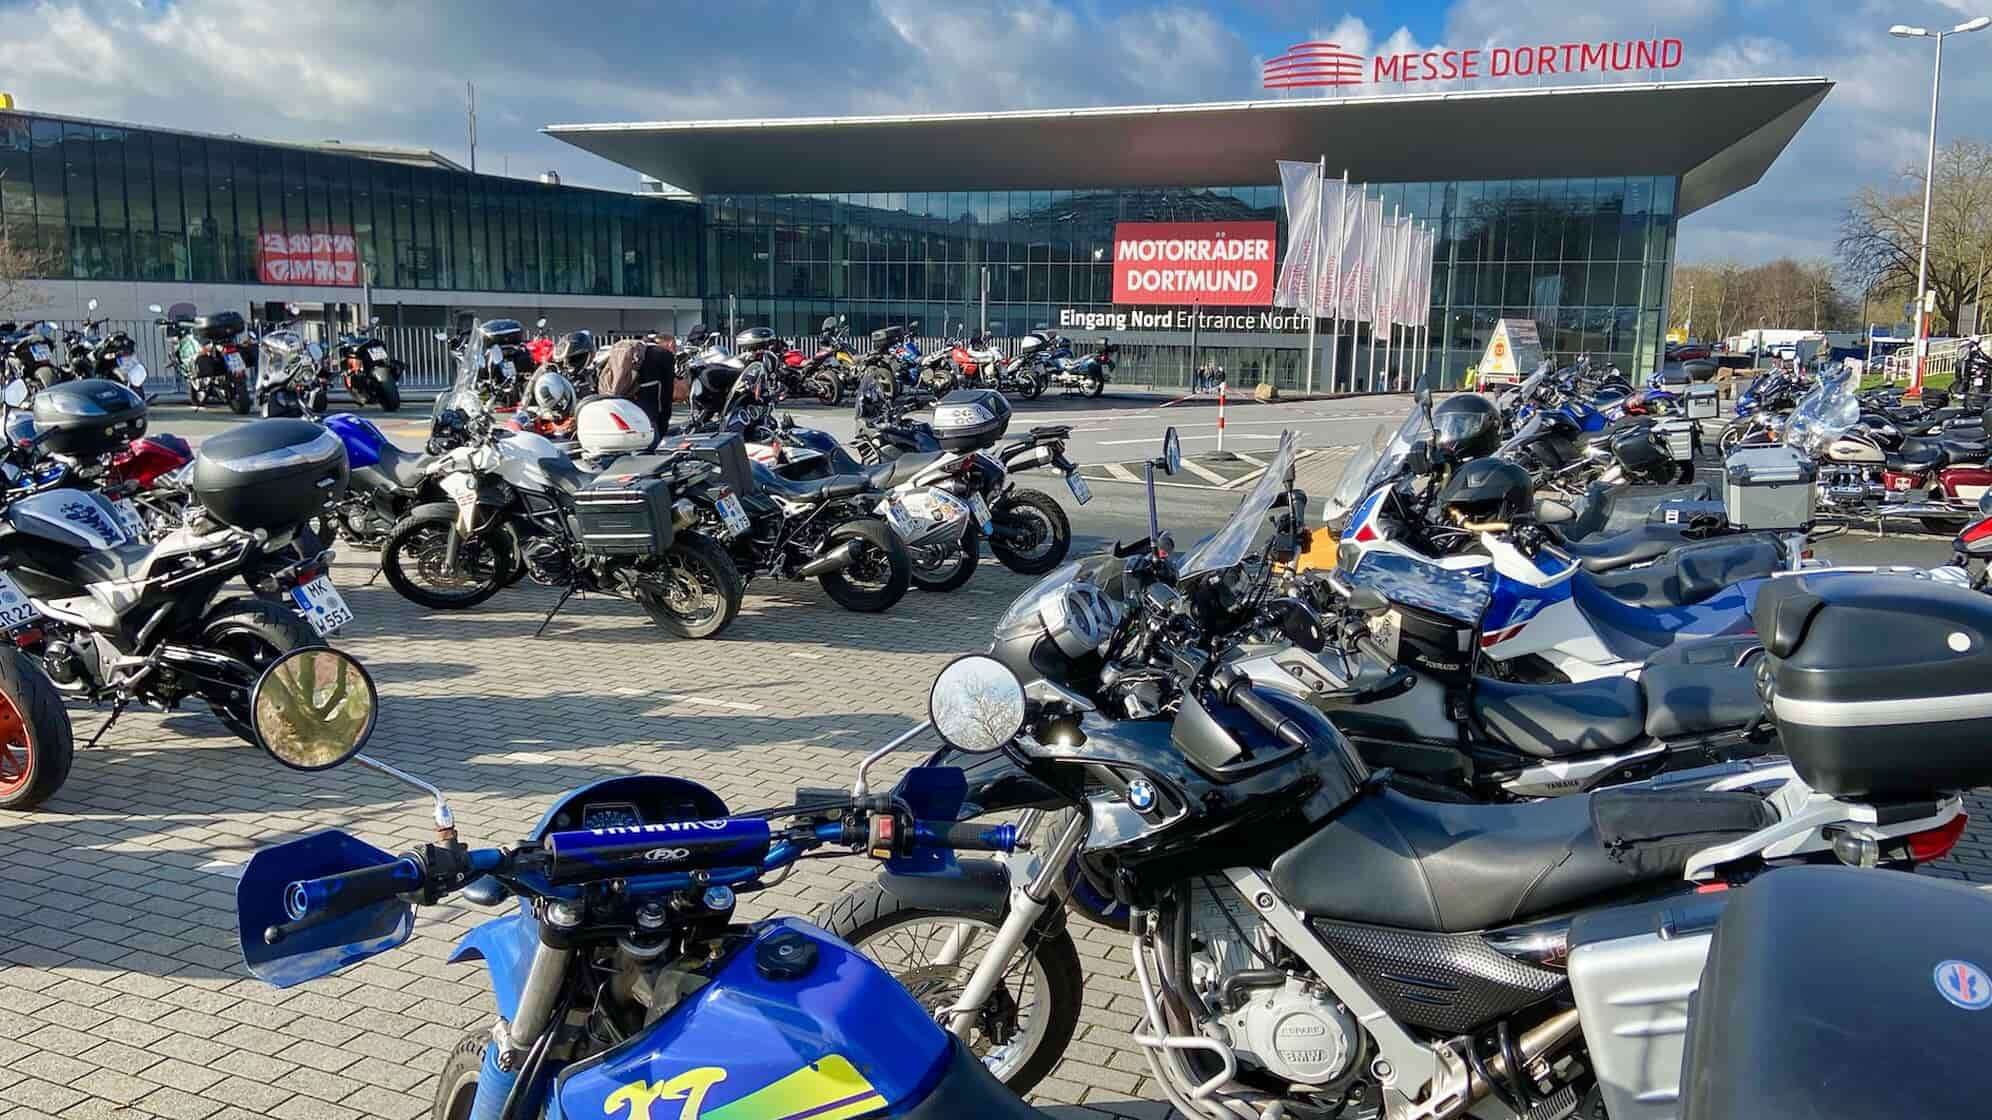 Foto vom Haupteingang der Motorradmesse Motorräder Dortmund mit zahlreichen geparkten Motorrädern verschiedener Marken